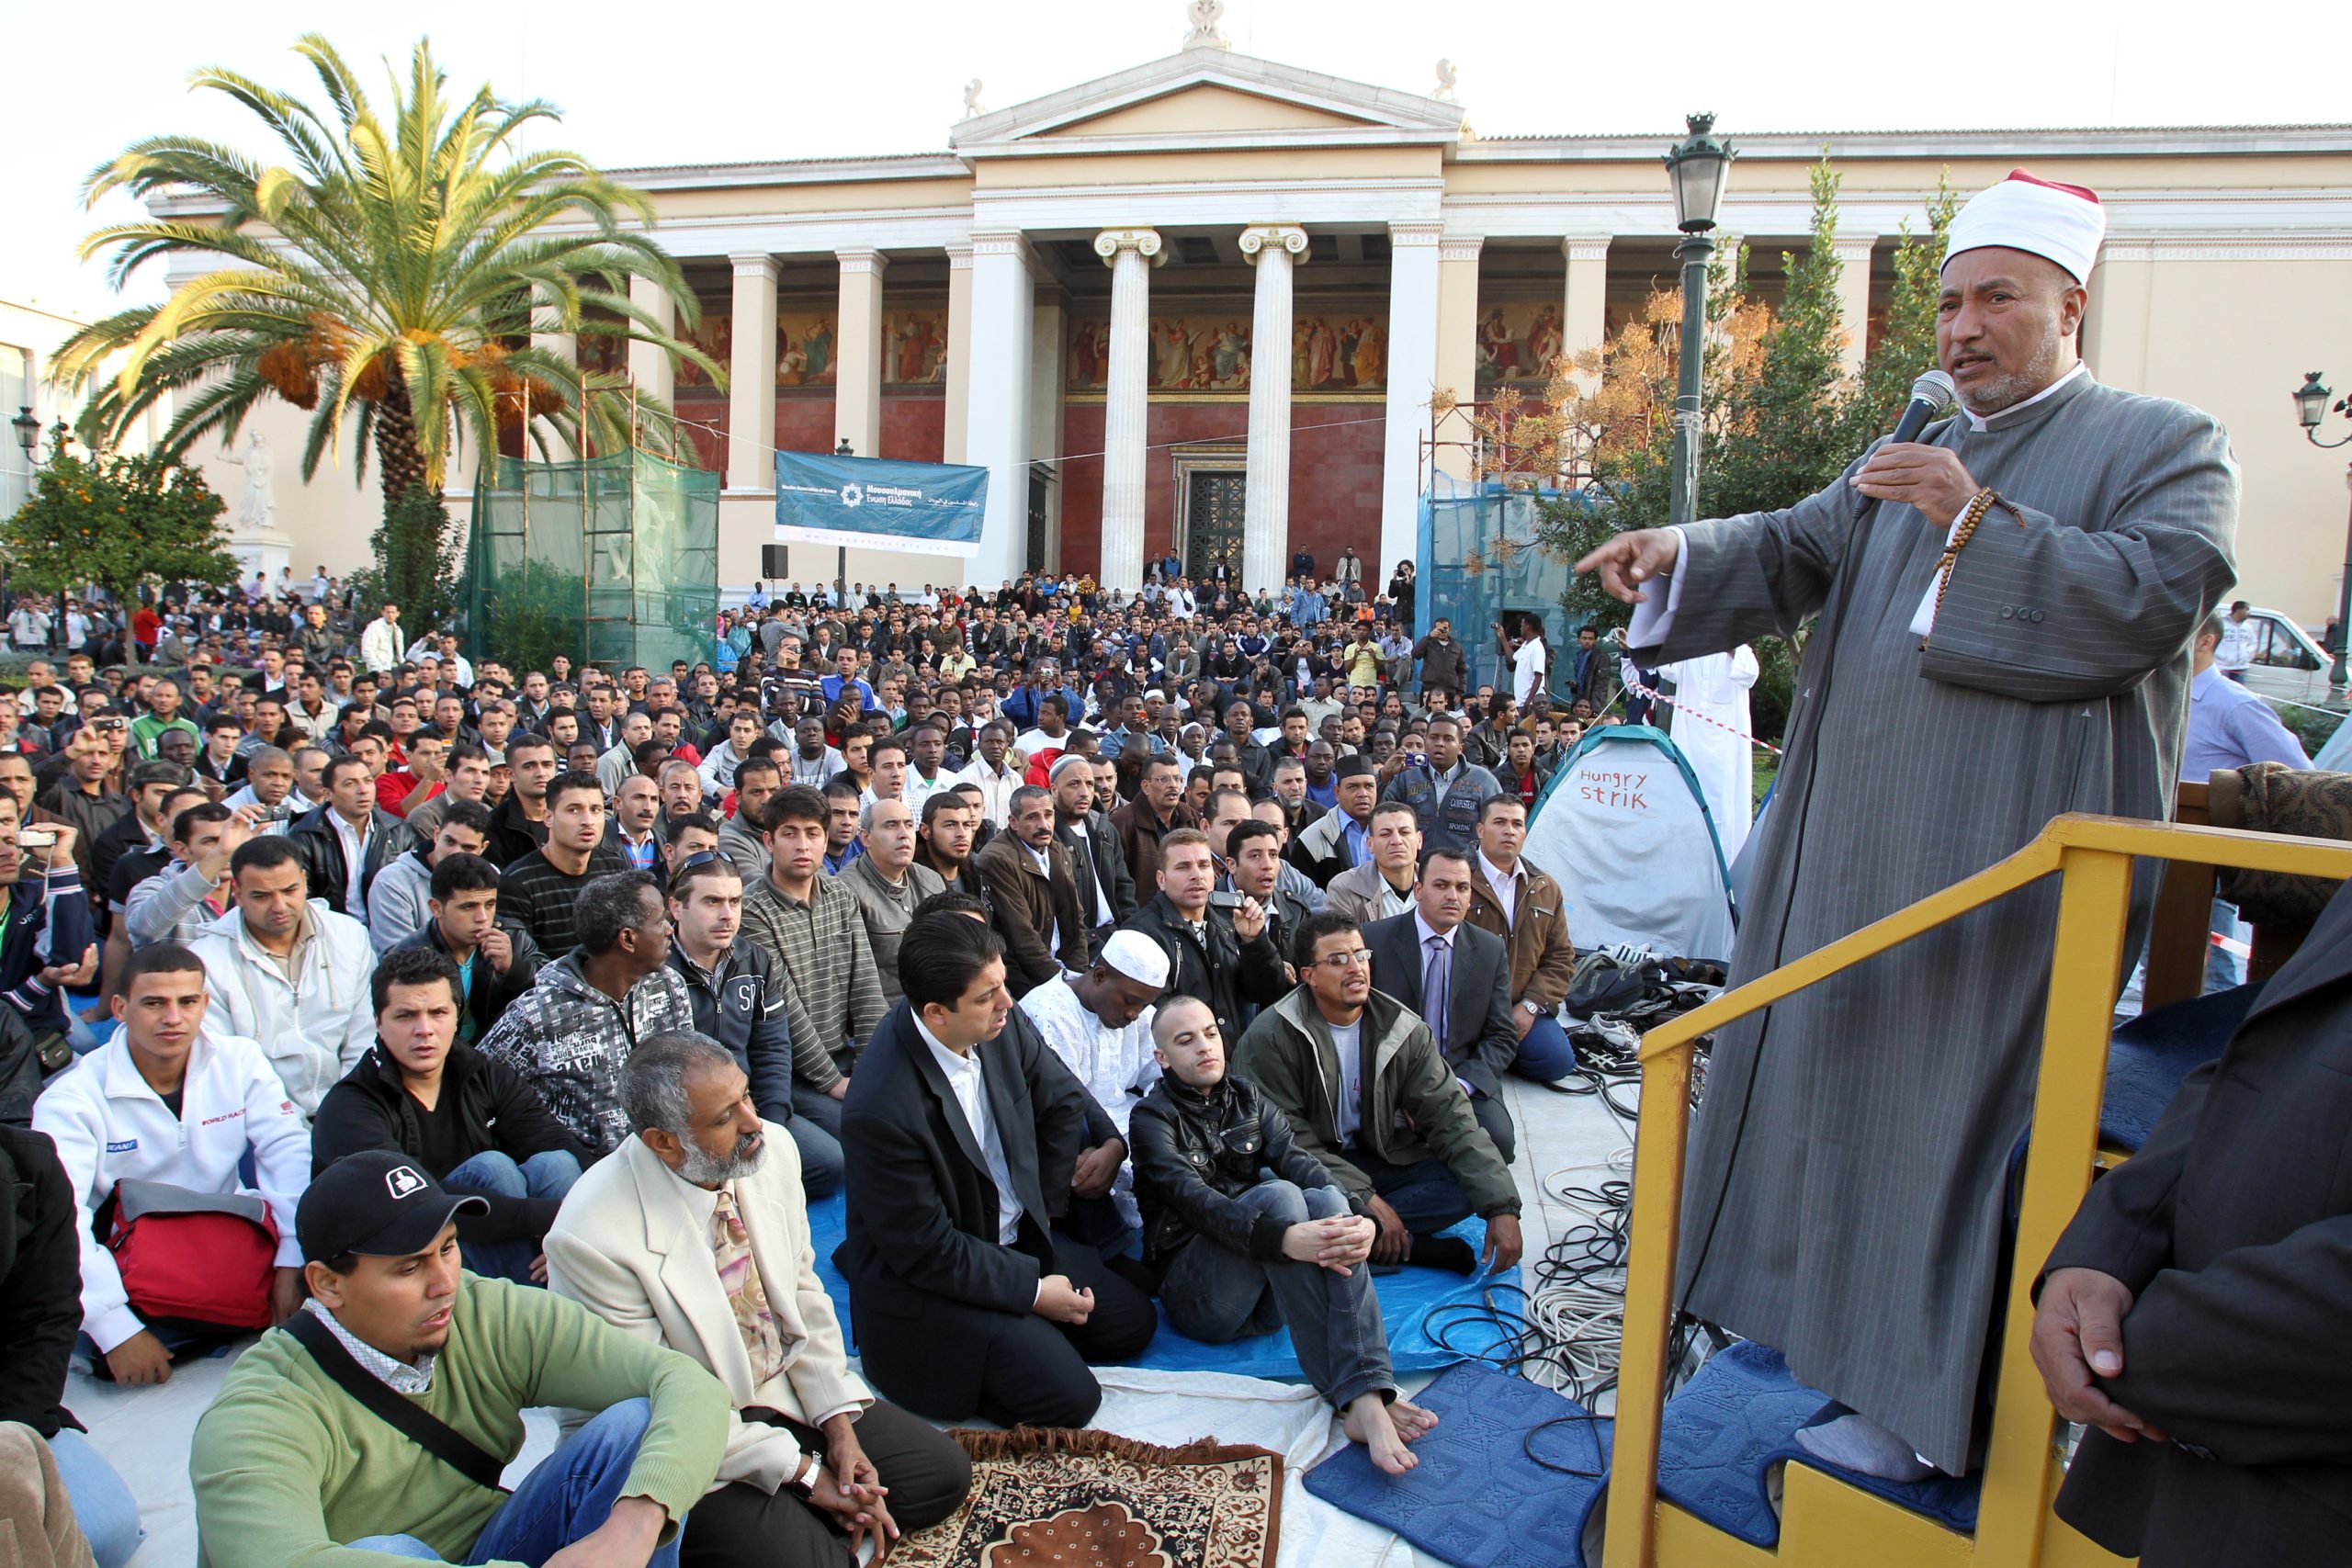 Θεσσαλονίκη: Ισλαμική θρησκευτική φιέστα σε κεντρική πλατεία – Θα δούμε πάλι εικόνες από… Καμπούλ;